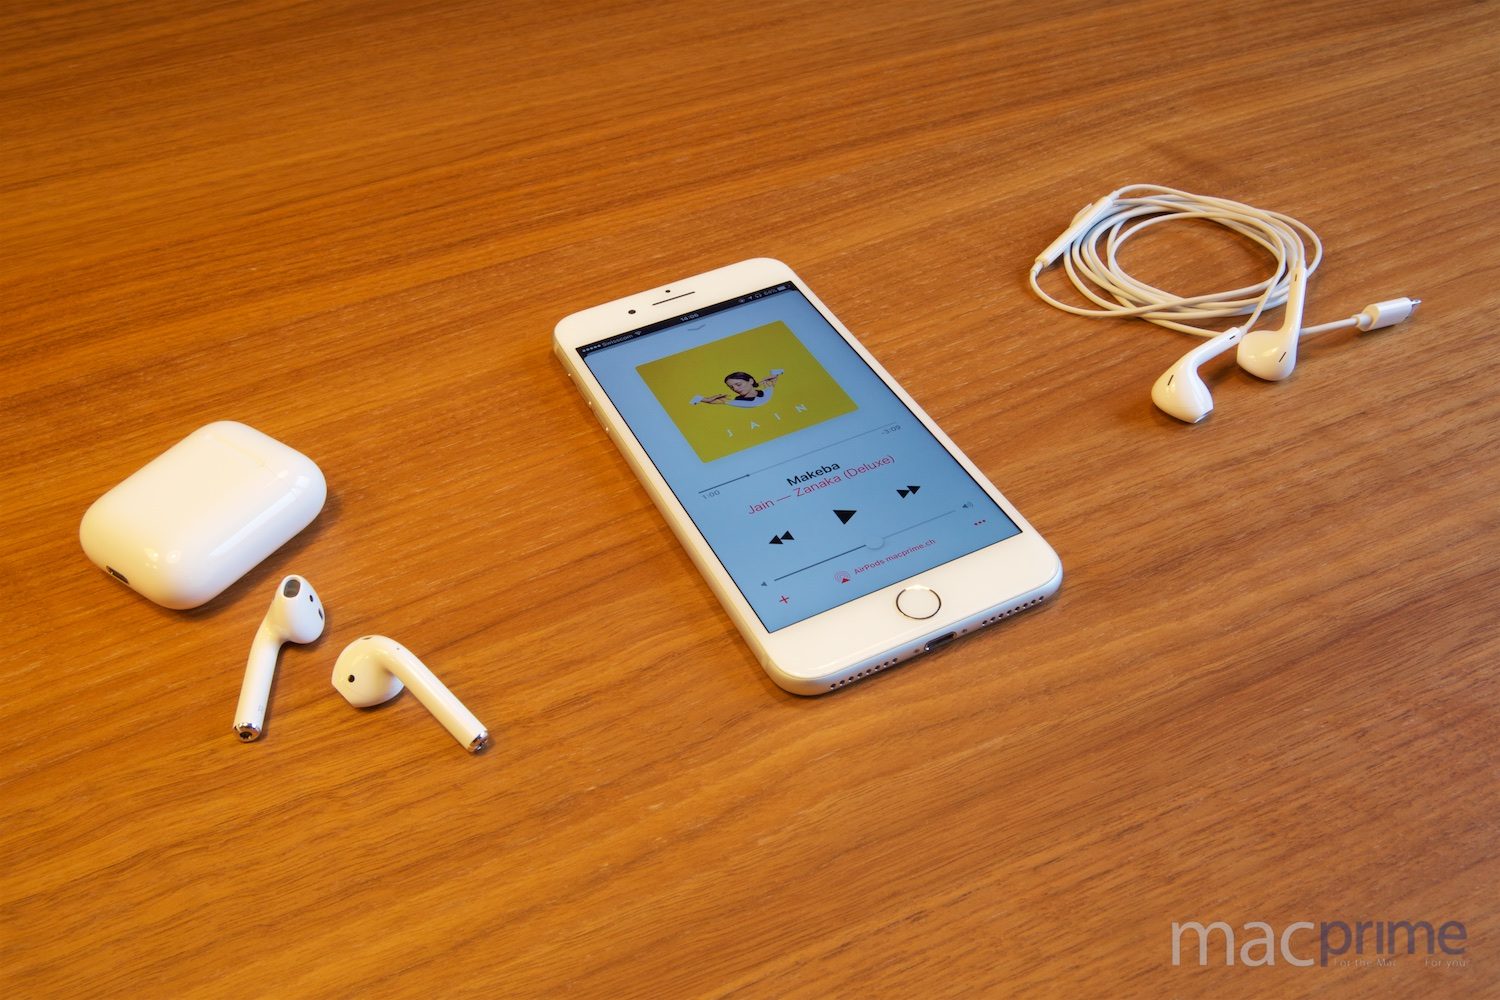 Kabel oder Funk — die EarPods (rechts) und die neuen AirPods (links) von Apple